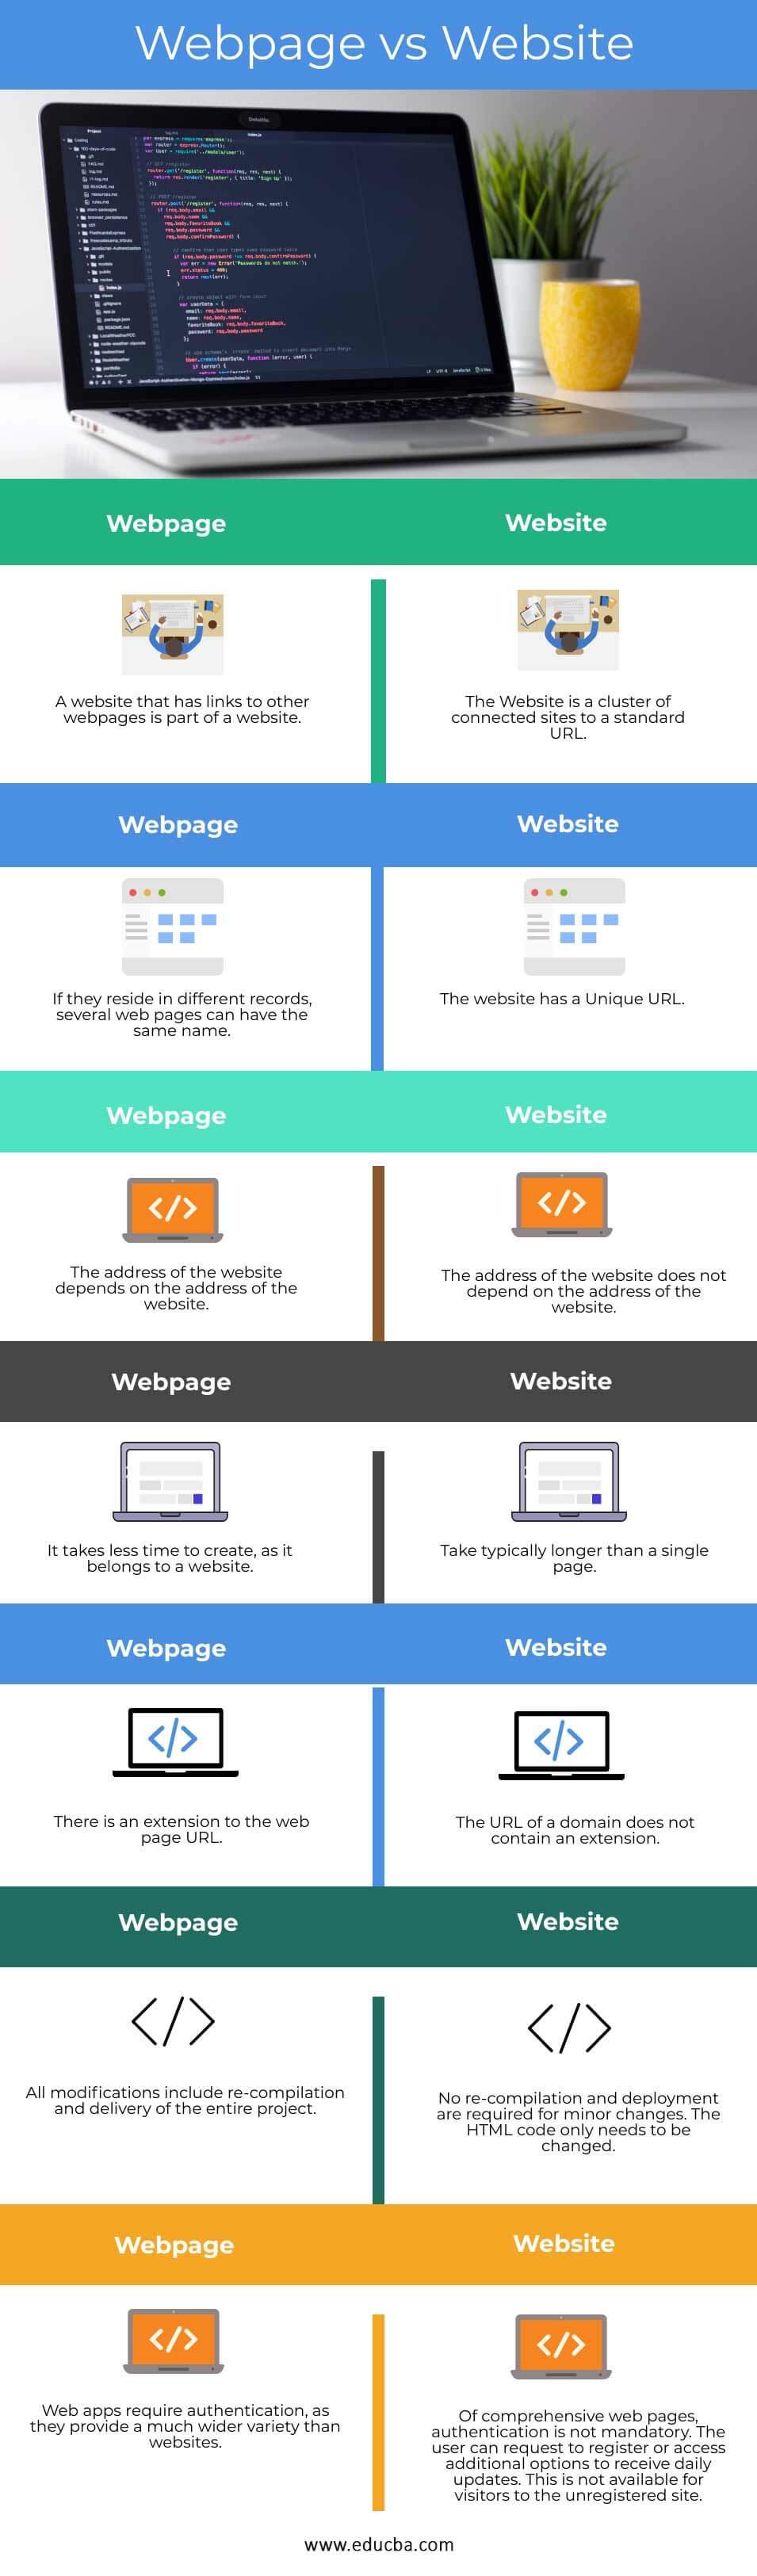 Webpage-vs-Website-info